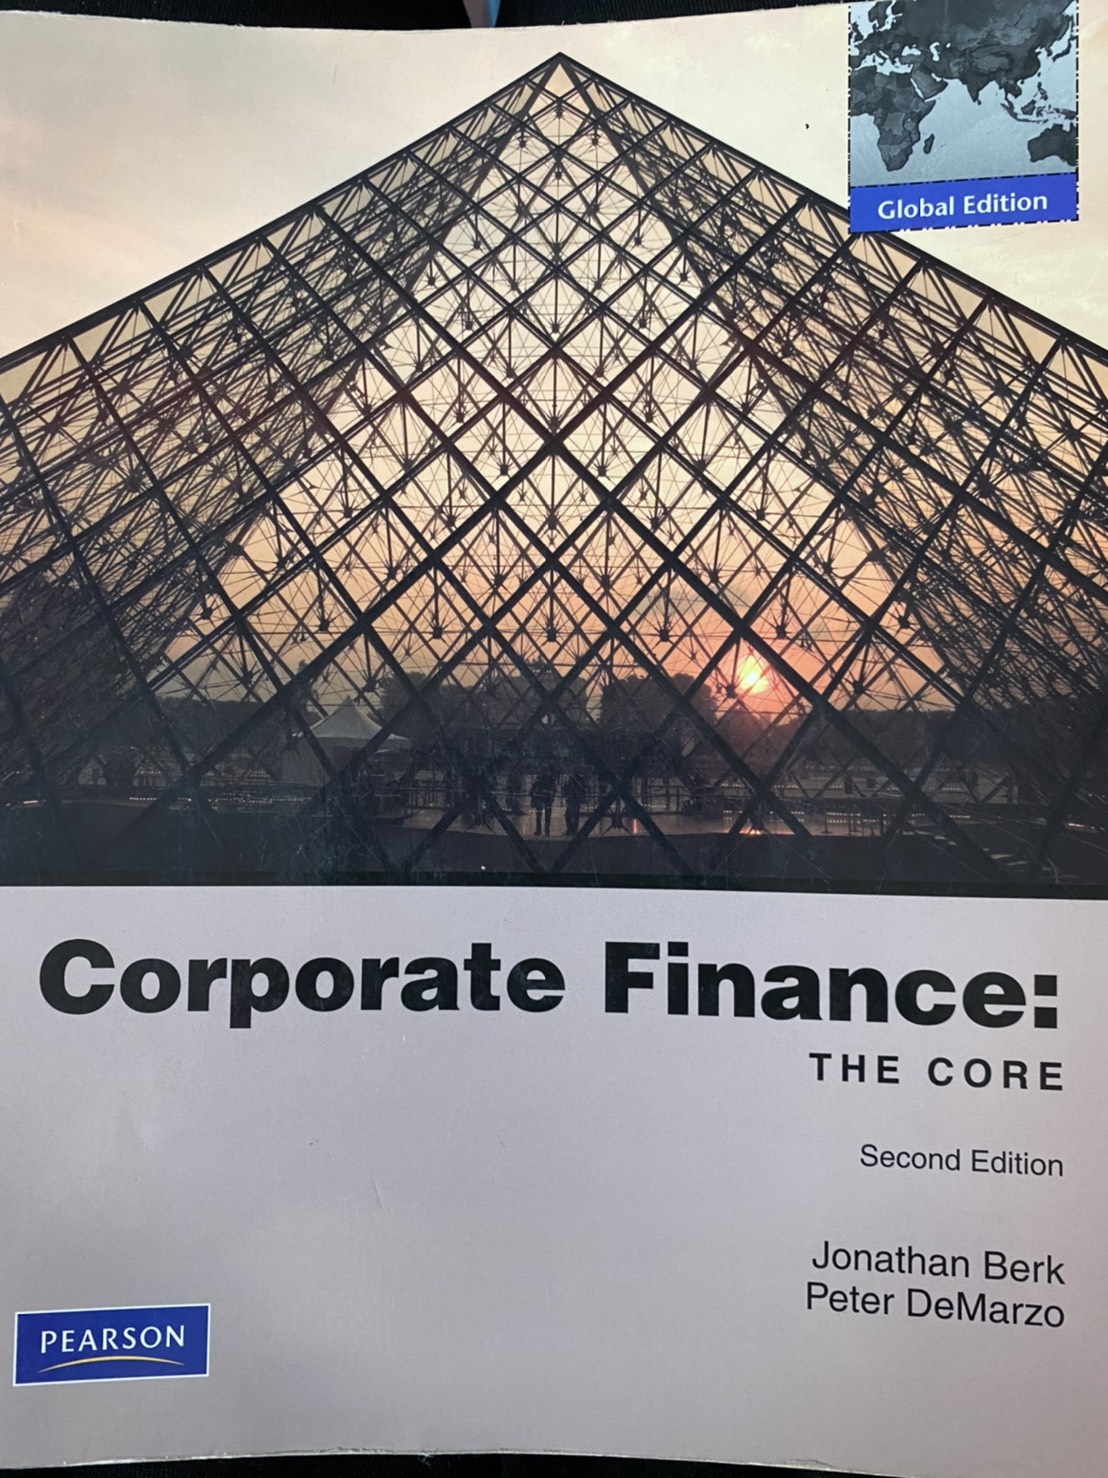 Corporate Finance: The Core 2/E 詳細資料